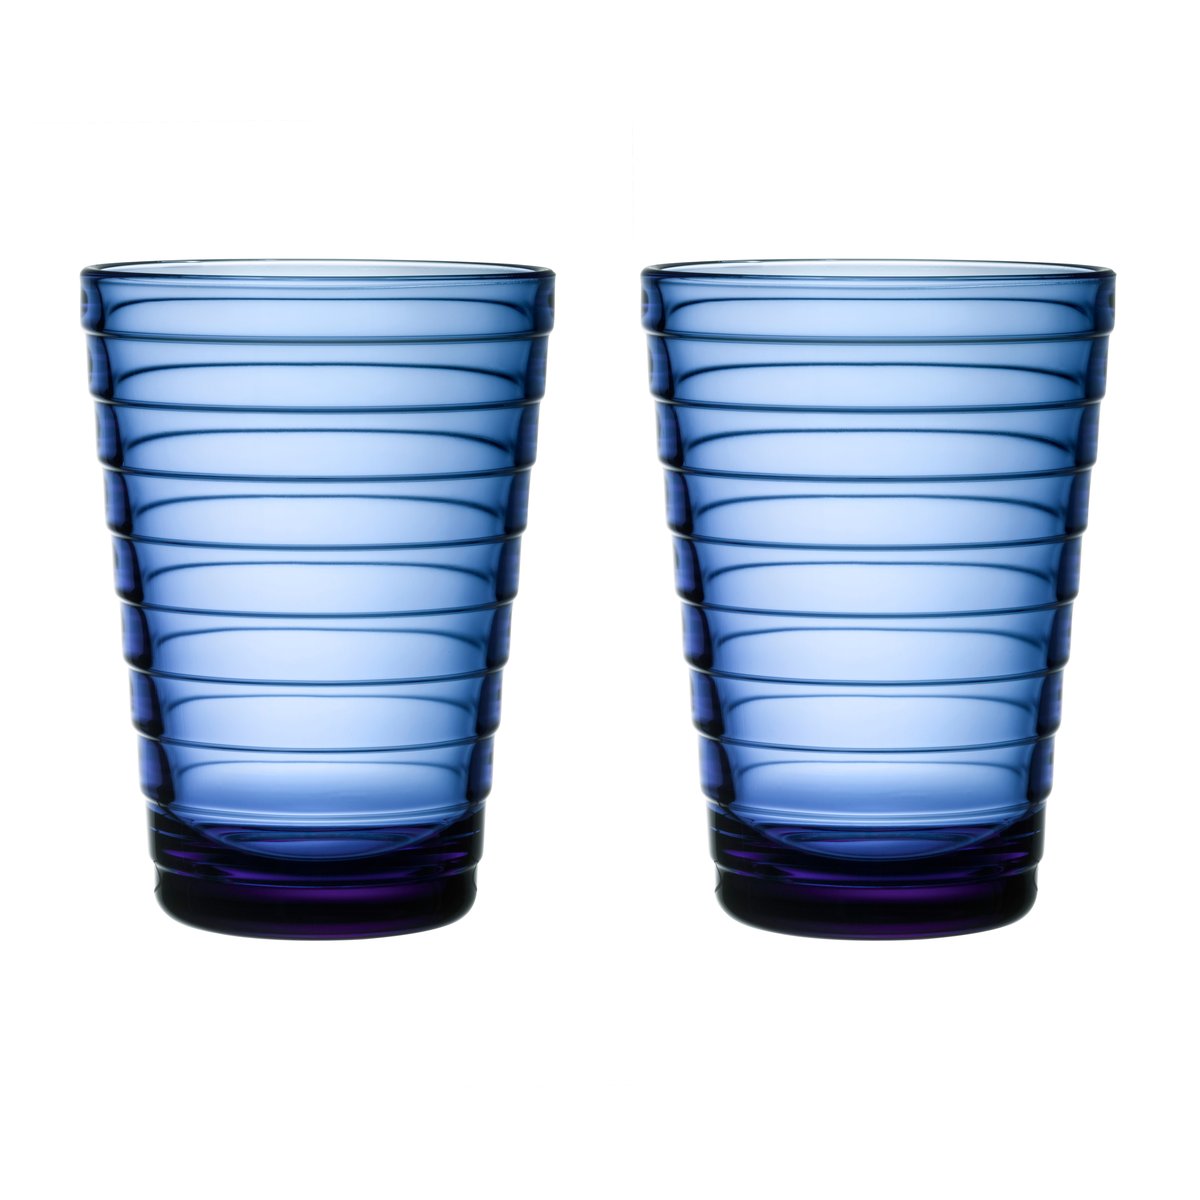 Iittala Aino Aalto drikkeglas 2 stk – 33 cl Ultra marineblå